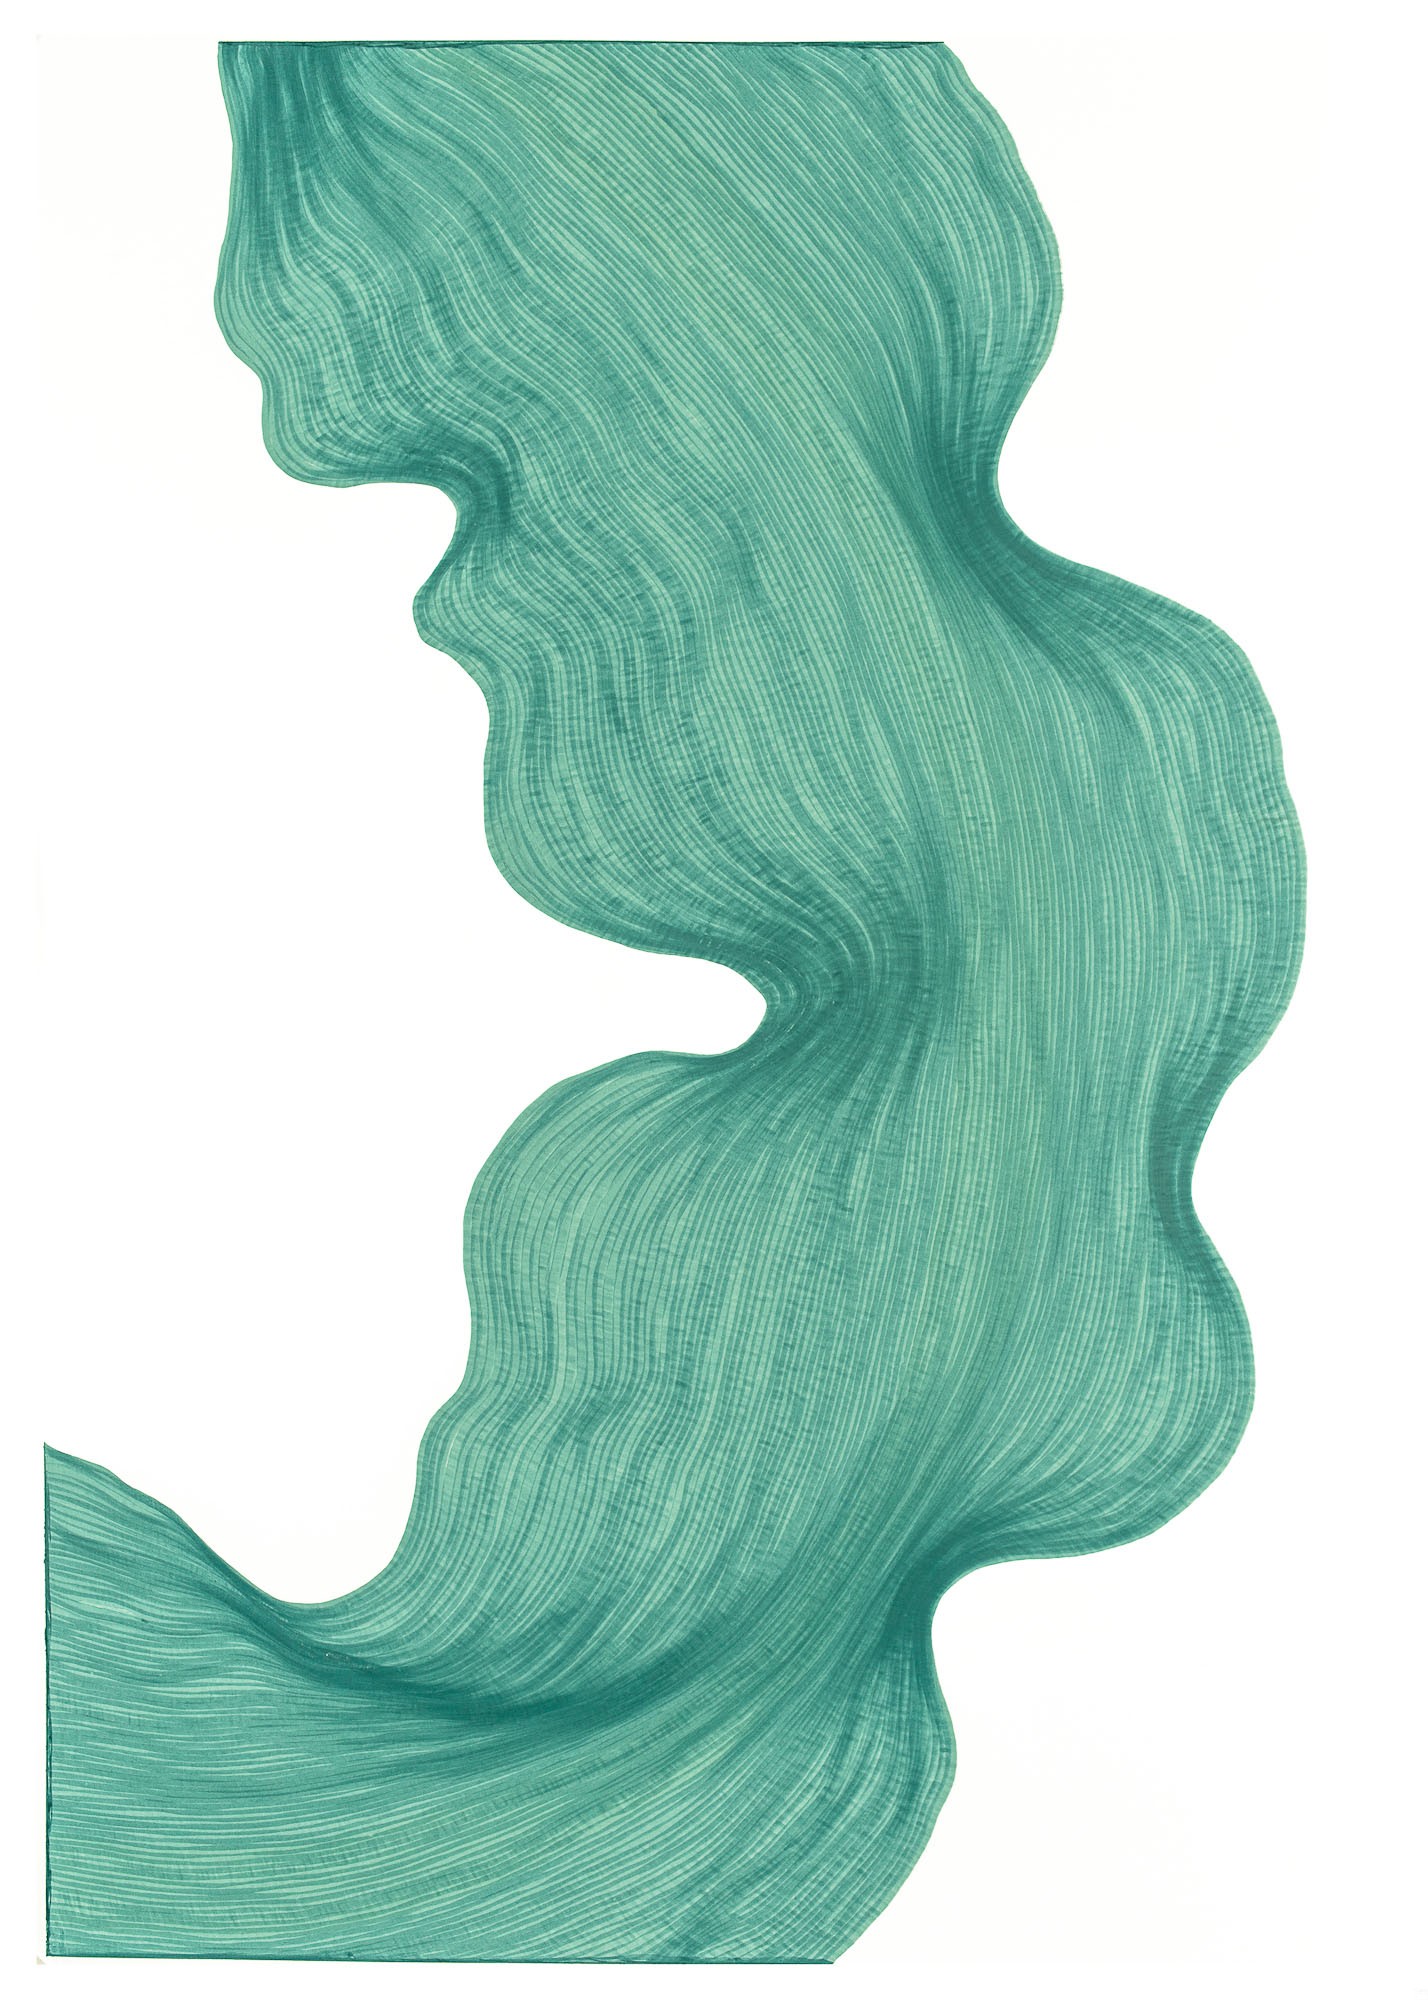 Icy Green | Lali Torma | Zeichnung | Kalligraphietusche auf Papier